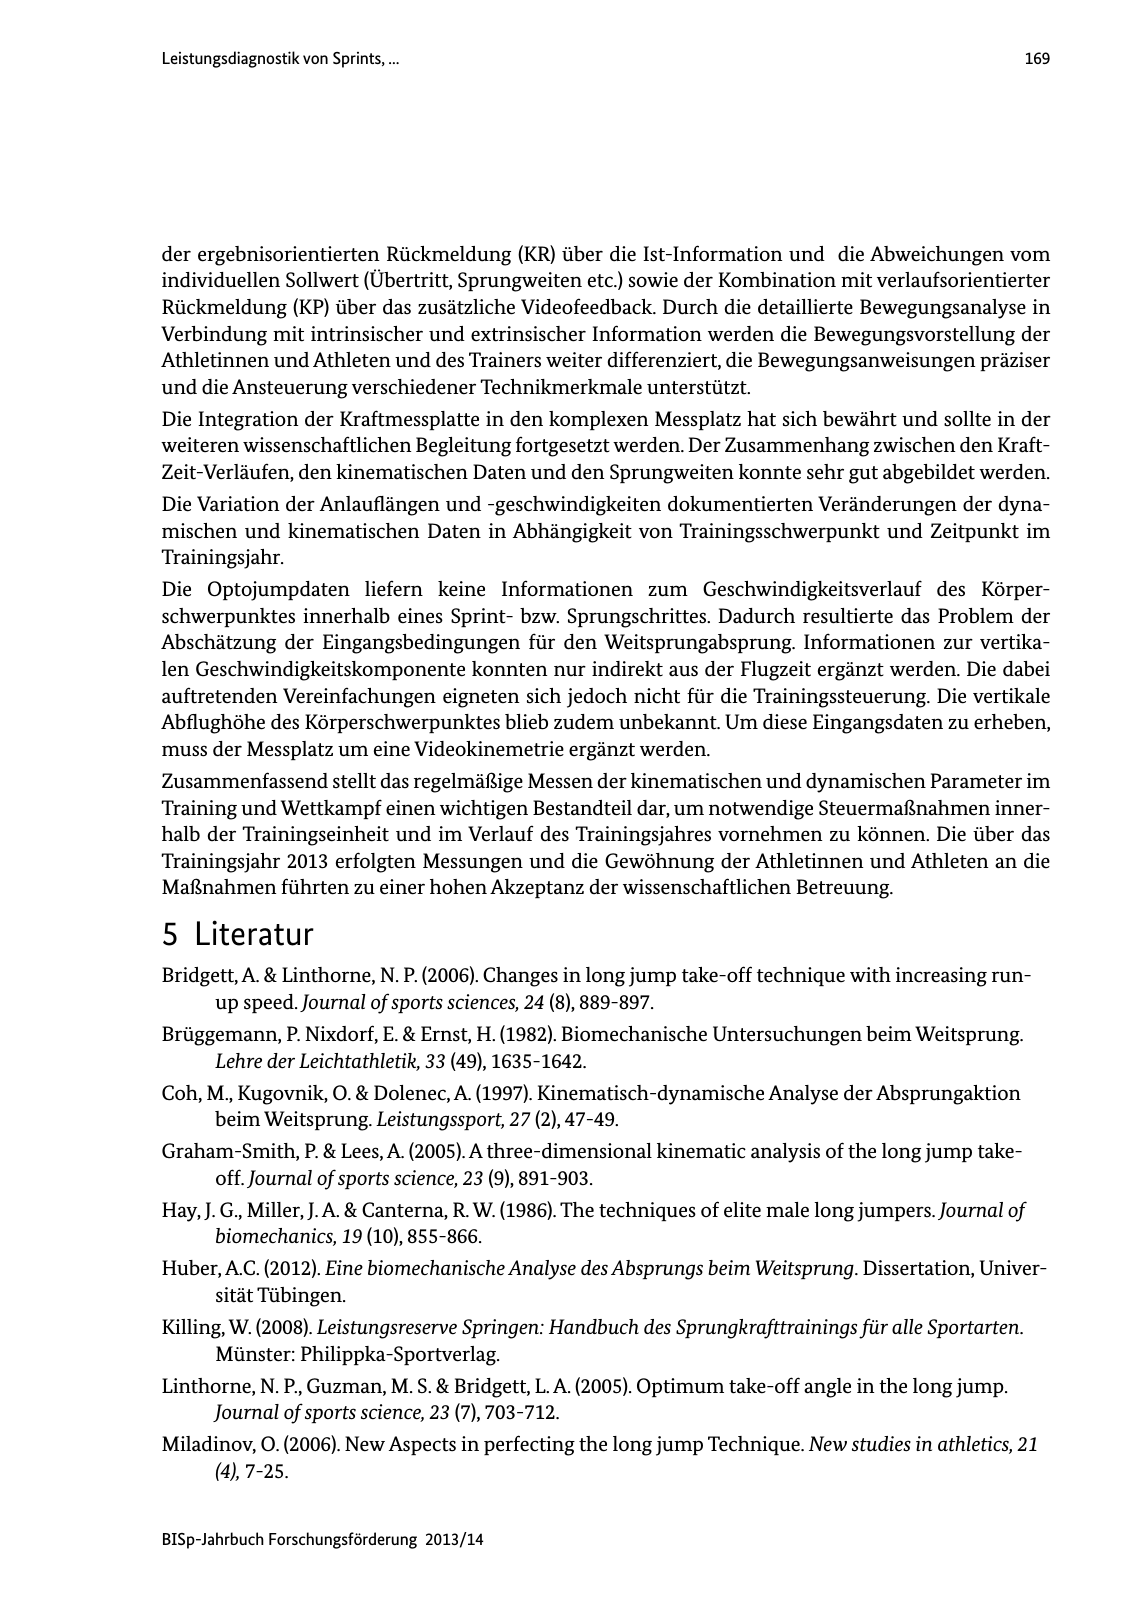 Vorschau BISp-Jahrbuch Forschungsförderung 2013/14 Seite 170